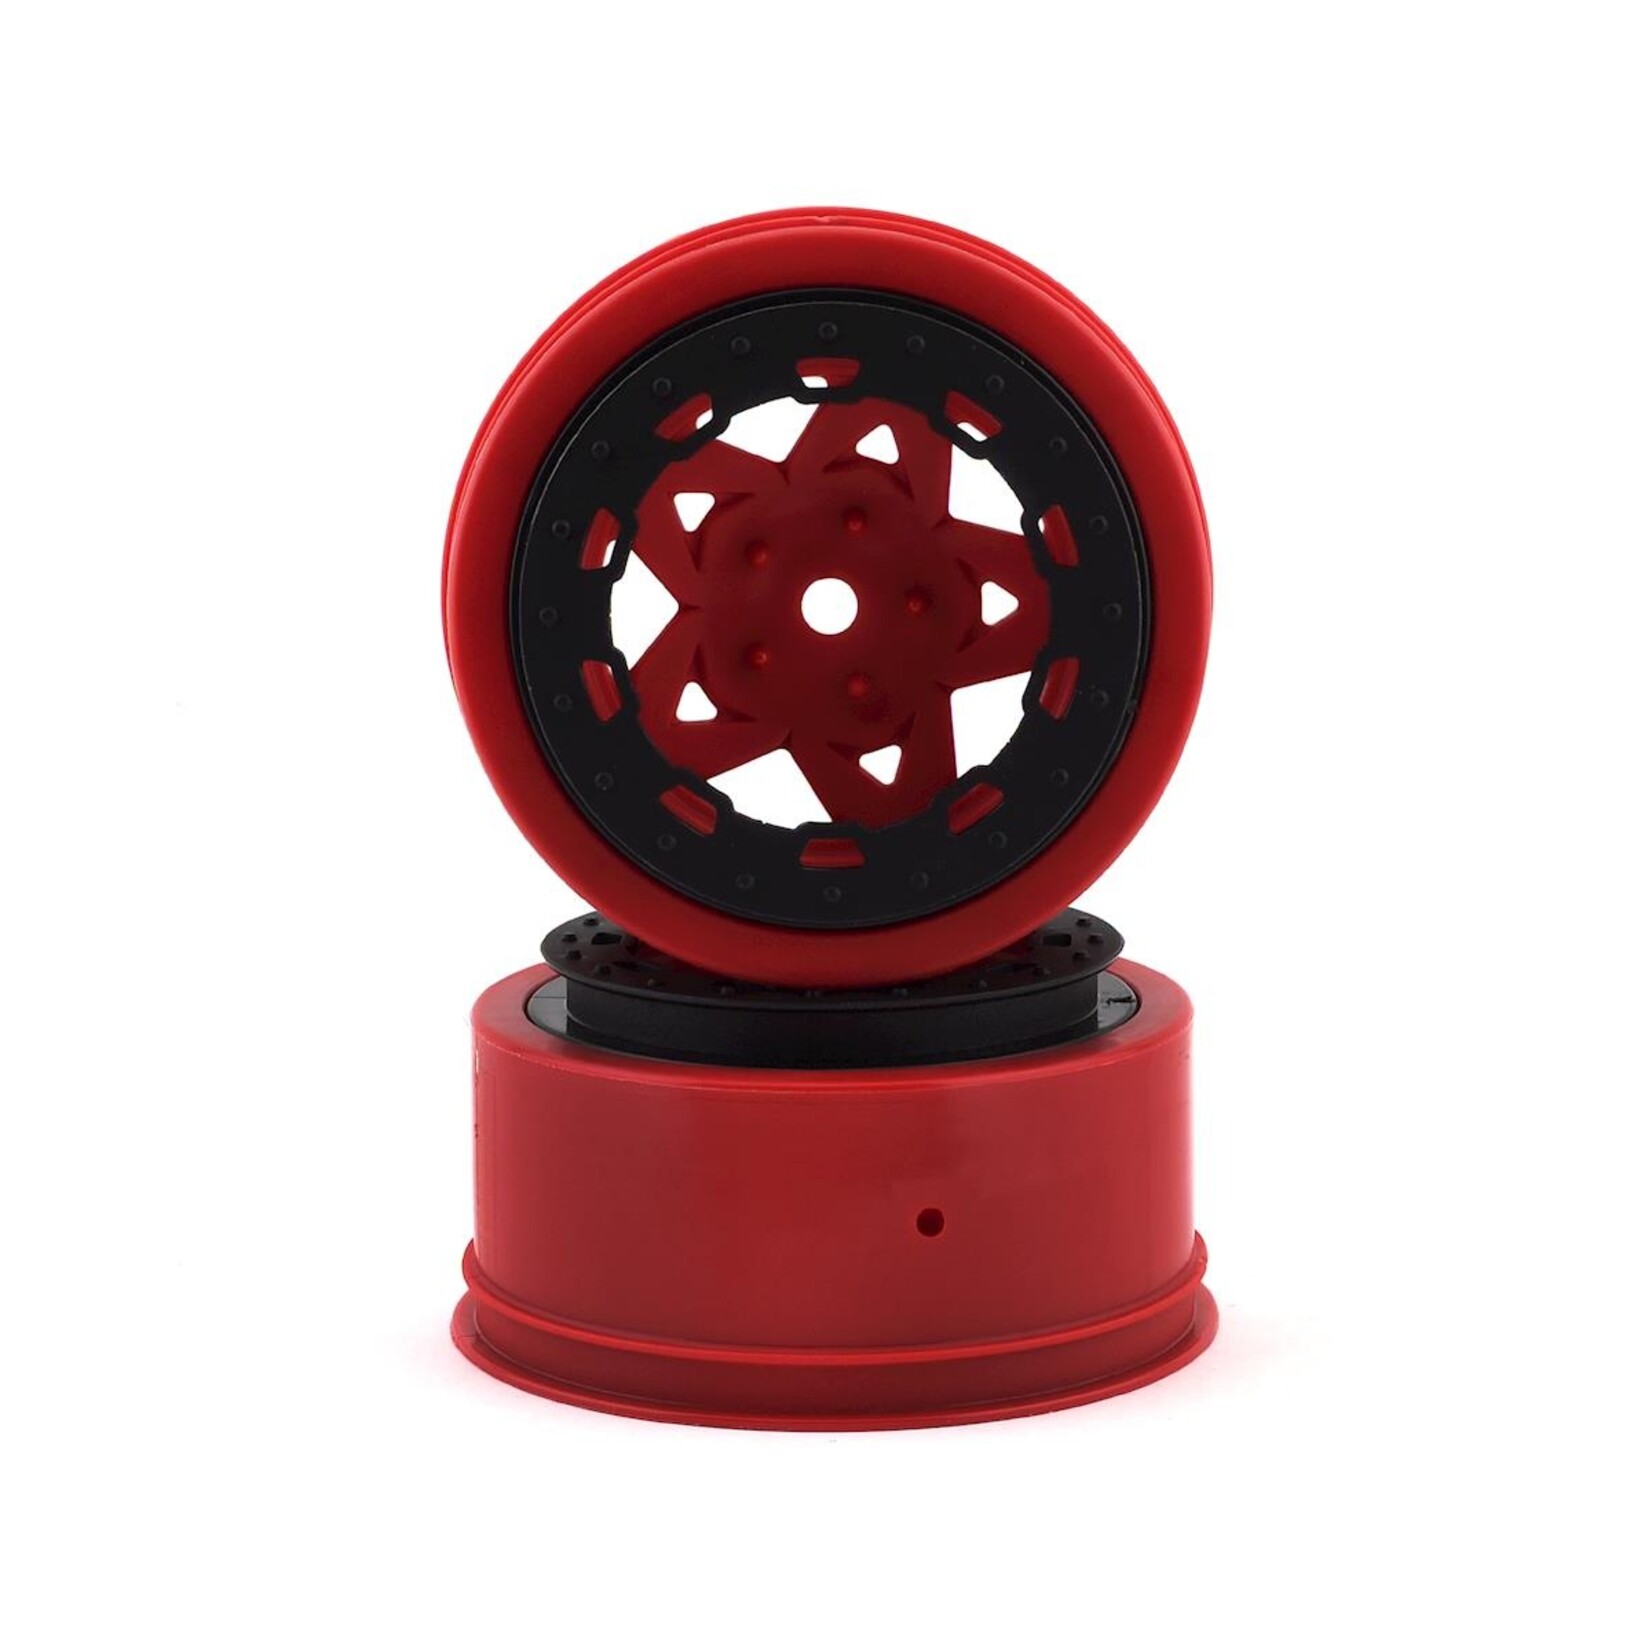 JConcepts JConcepts Tremor Short Course Wheels (Red) (2) (Slash Rear) w/12mm Hex #3391RB